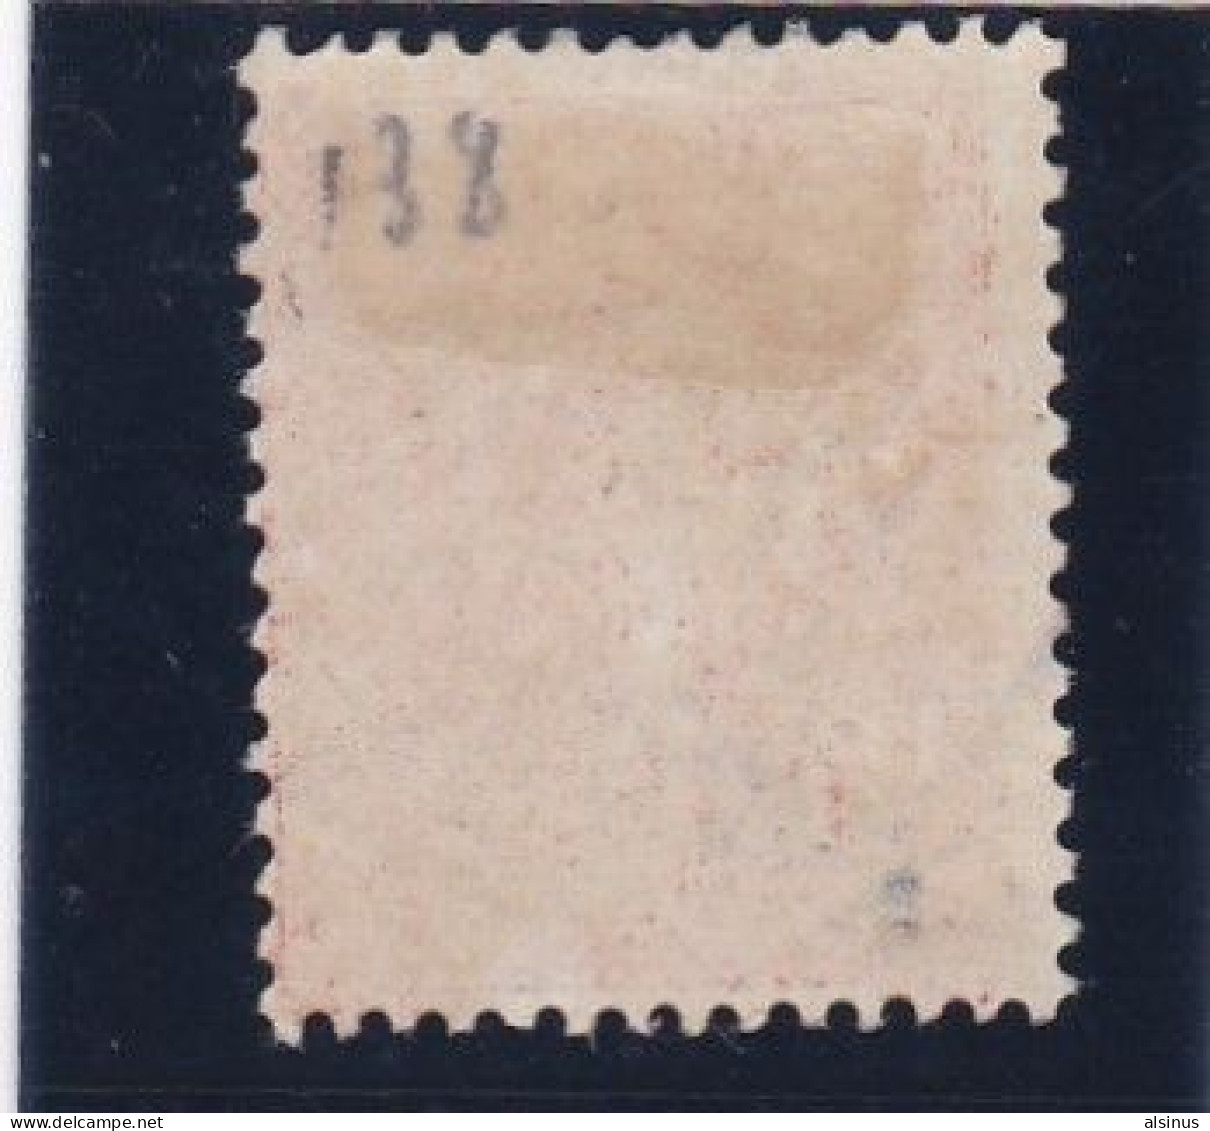 FRANCE - 1907 - TYPE SEMEUSE - N° 133c - 10 C ECARLATE - SIGNE - OBLITERE - 1903-60 Sower - Ligned